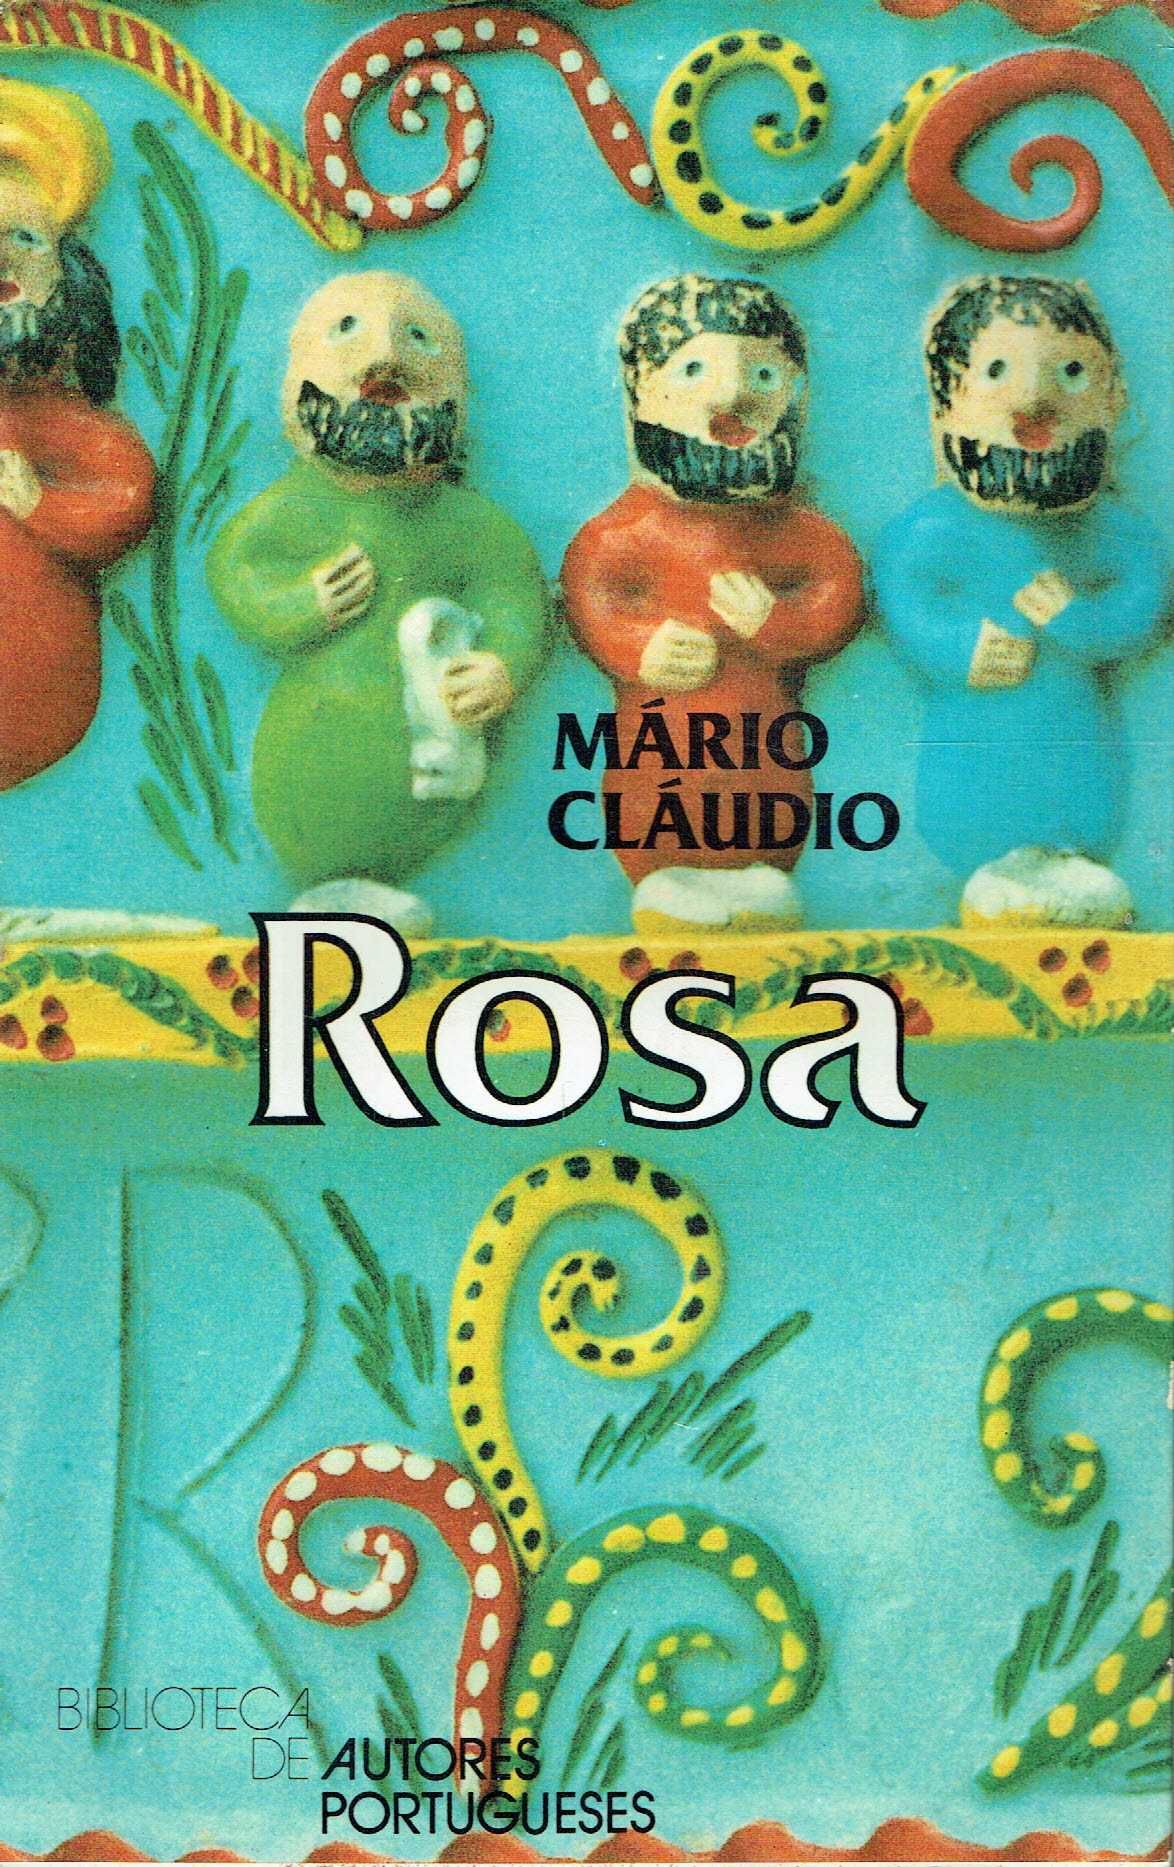 7258

Rosa
de Mário Cláudio

1ª edição /1988